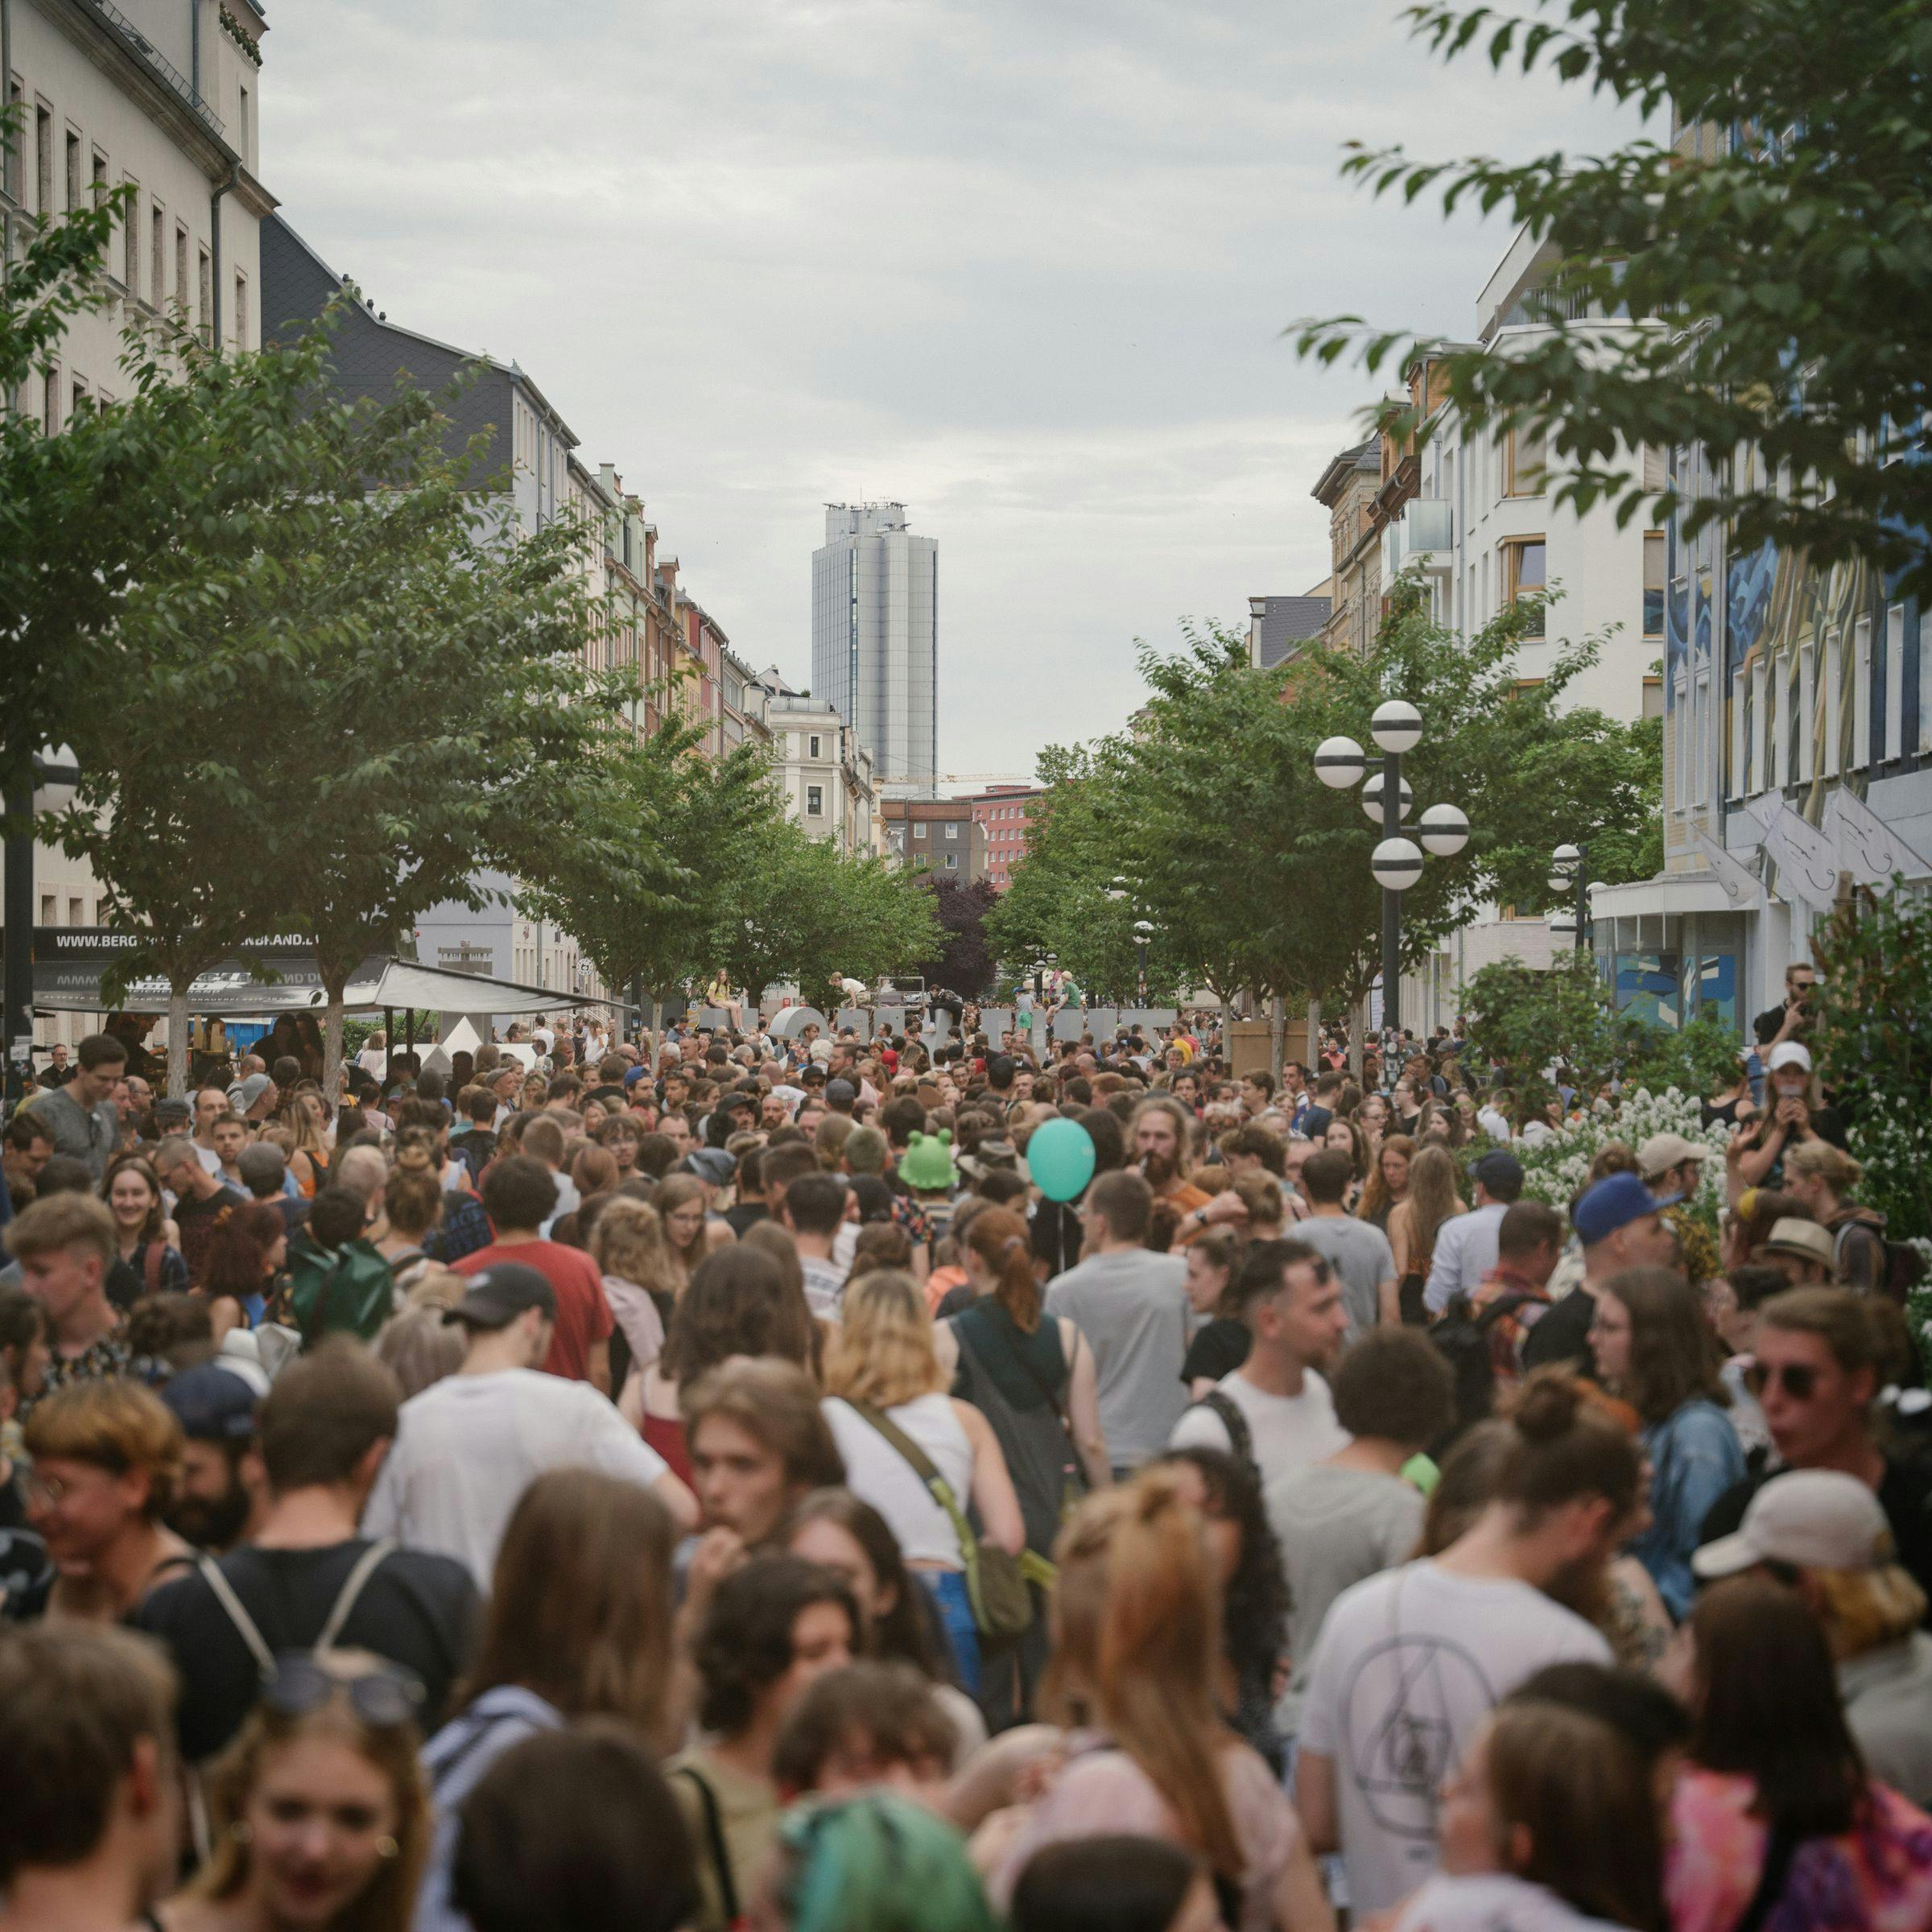 Une foule se tient dans les rues de Chemnitz et regarde en direction de l'hôtel Dorint.